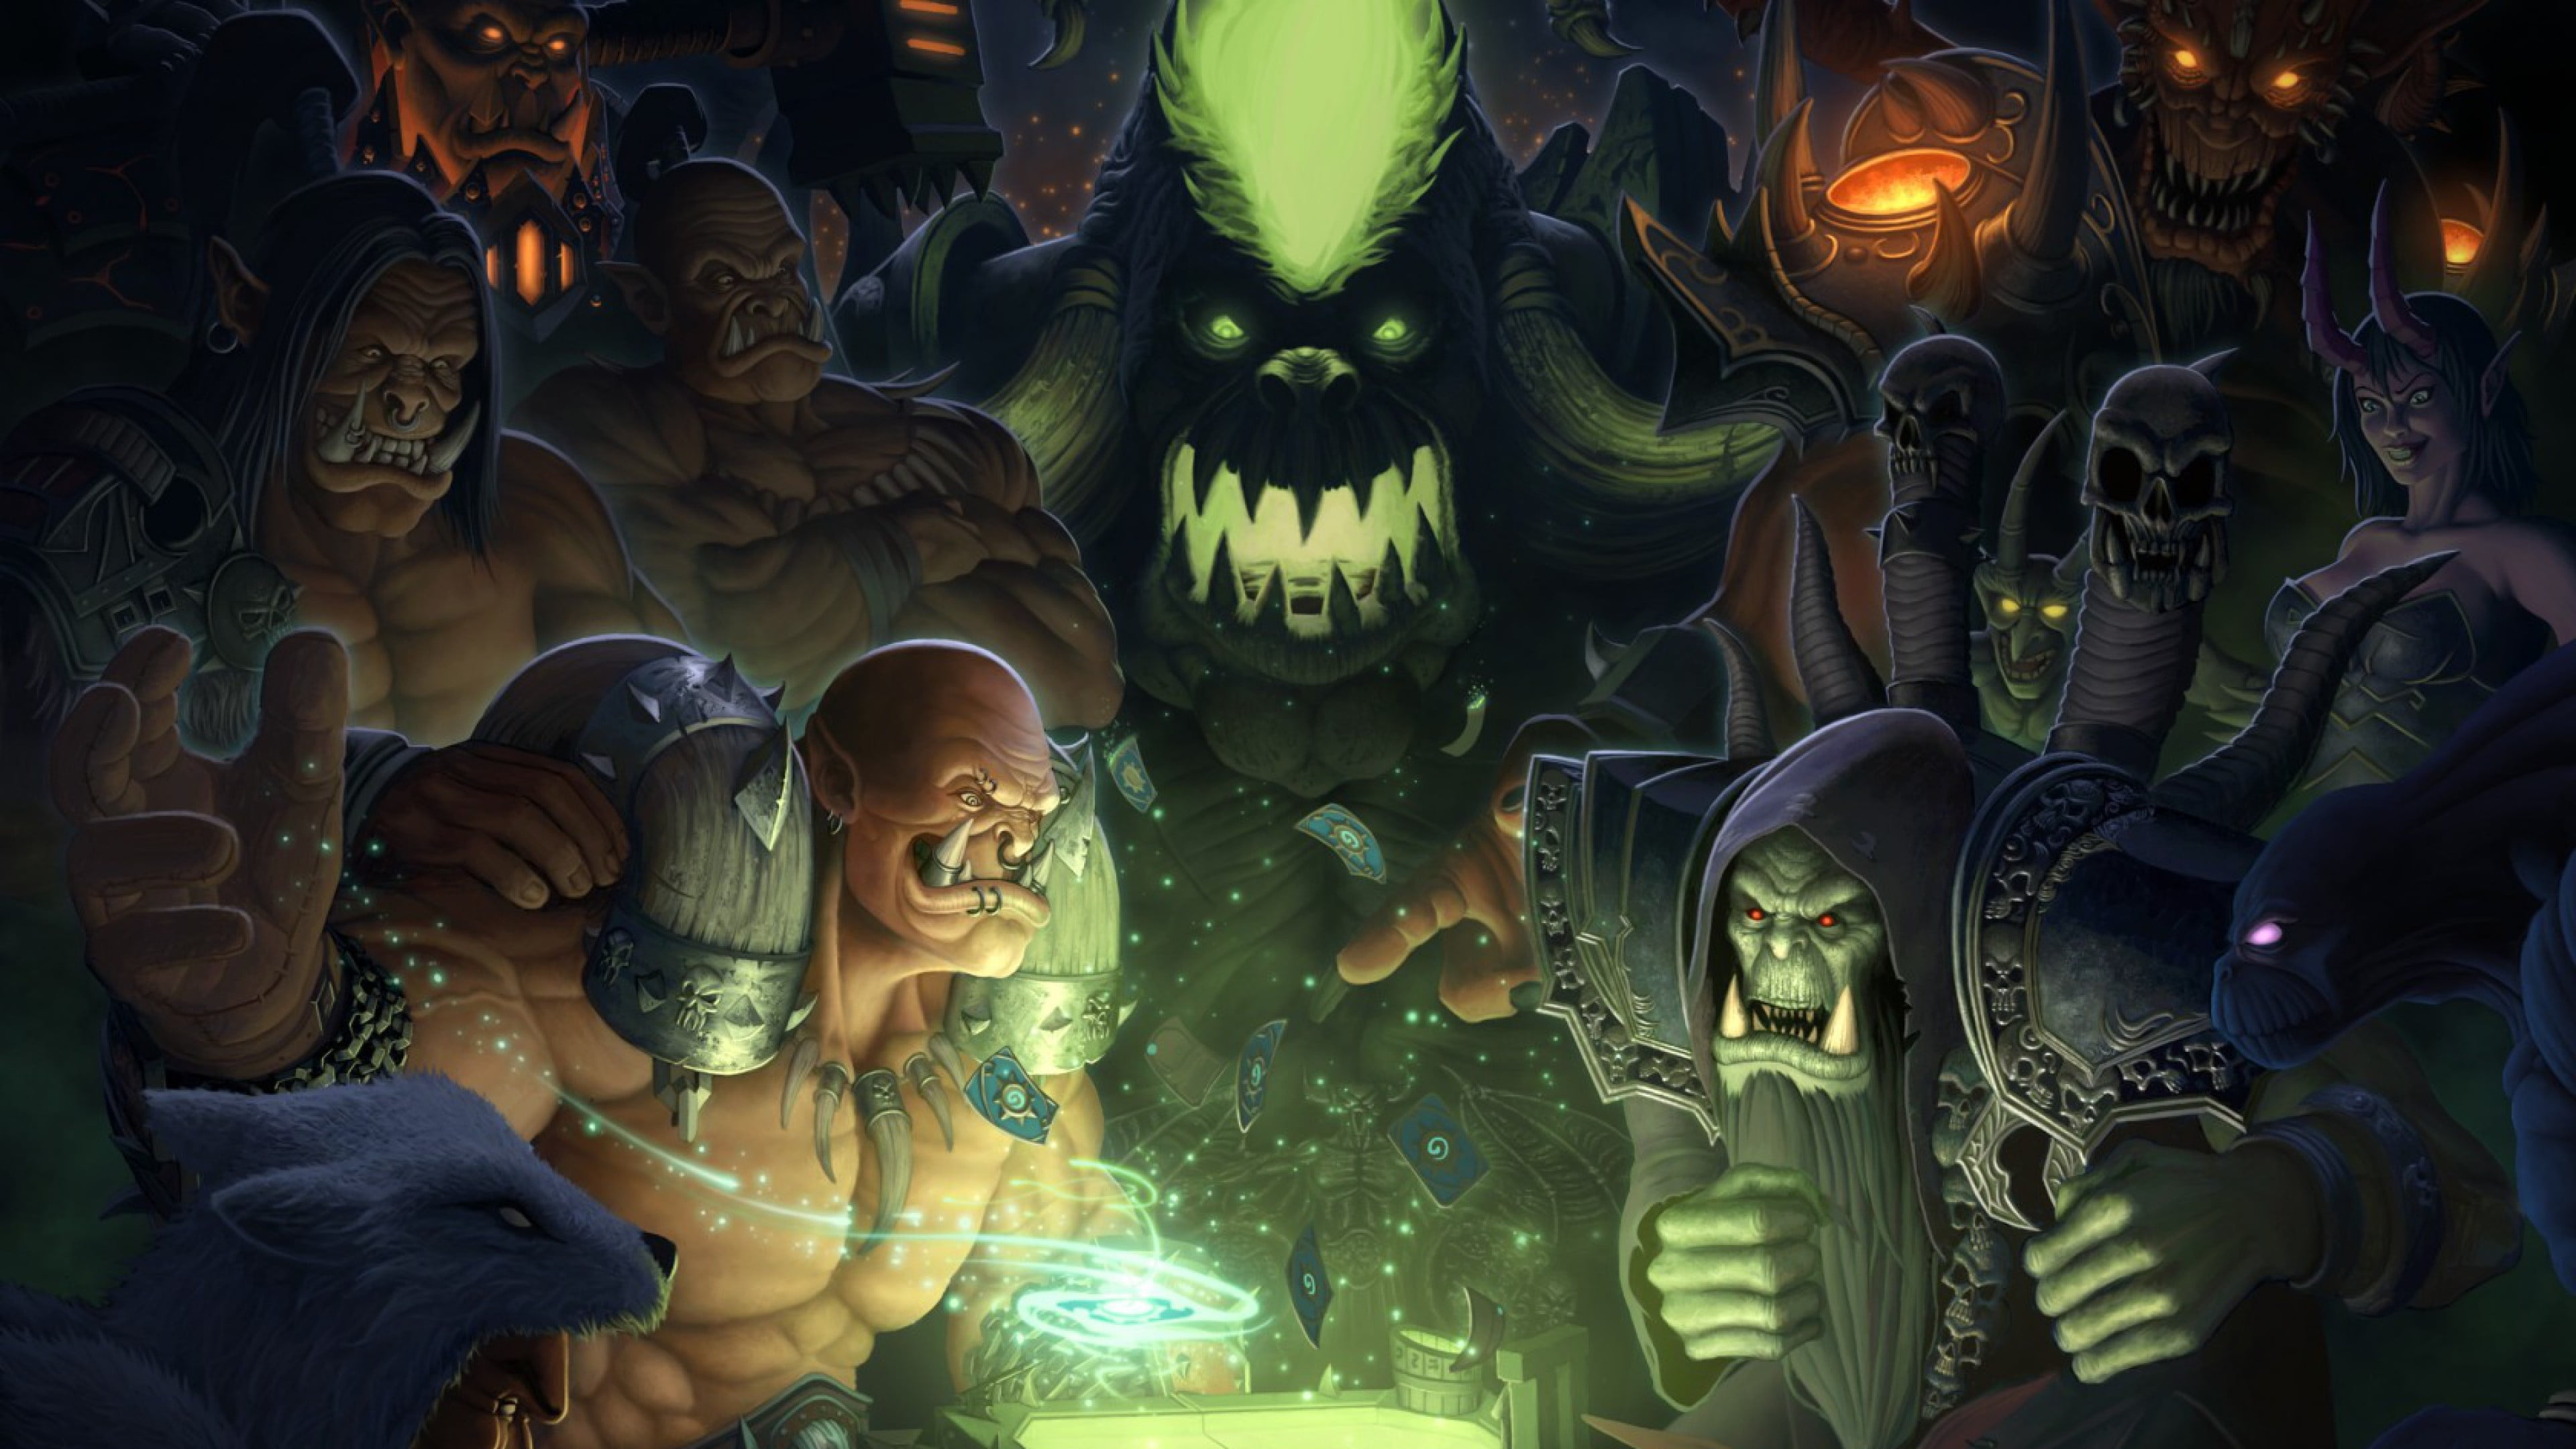 Heroes Of Warcraft, Play, Video Game, Wallpaper - Grom Hellscream Vs Durotan - HD Wallpaper 